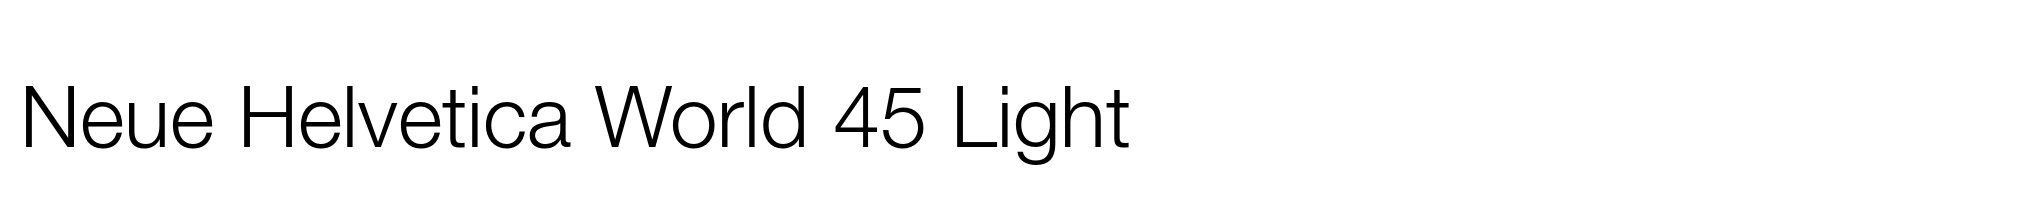 Neue Helvetica World 45 Light image